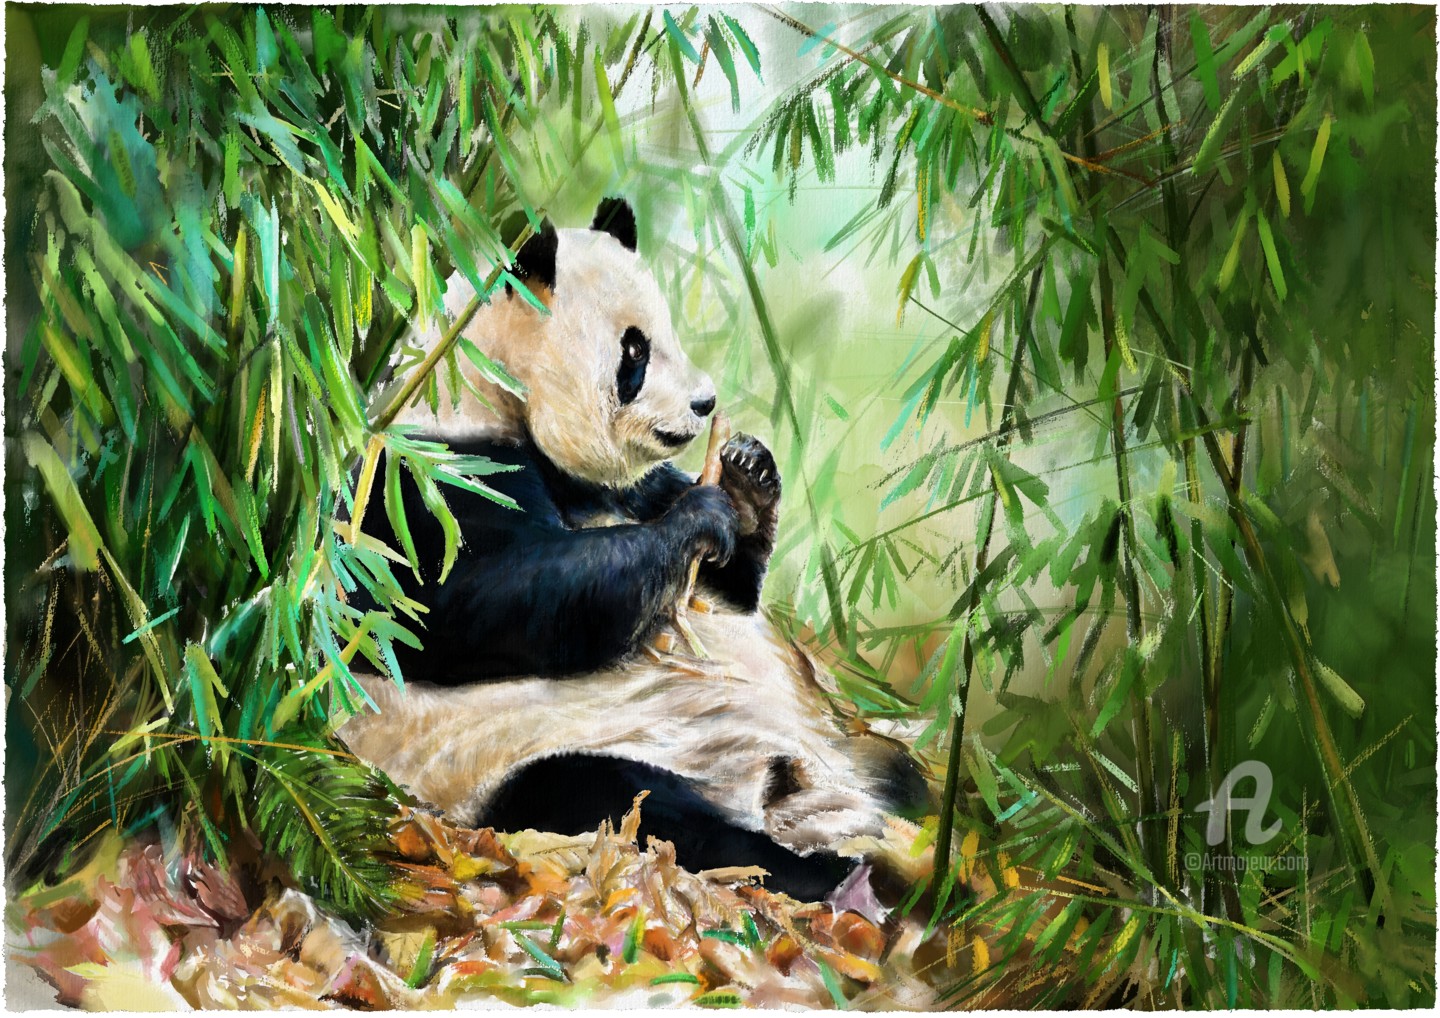 pandas eating bamboo